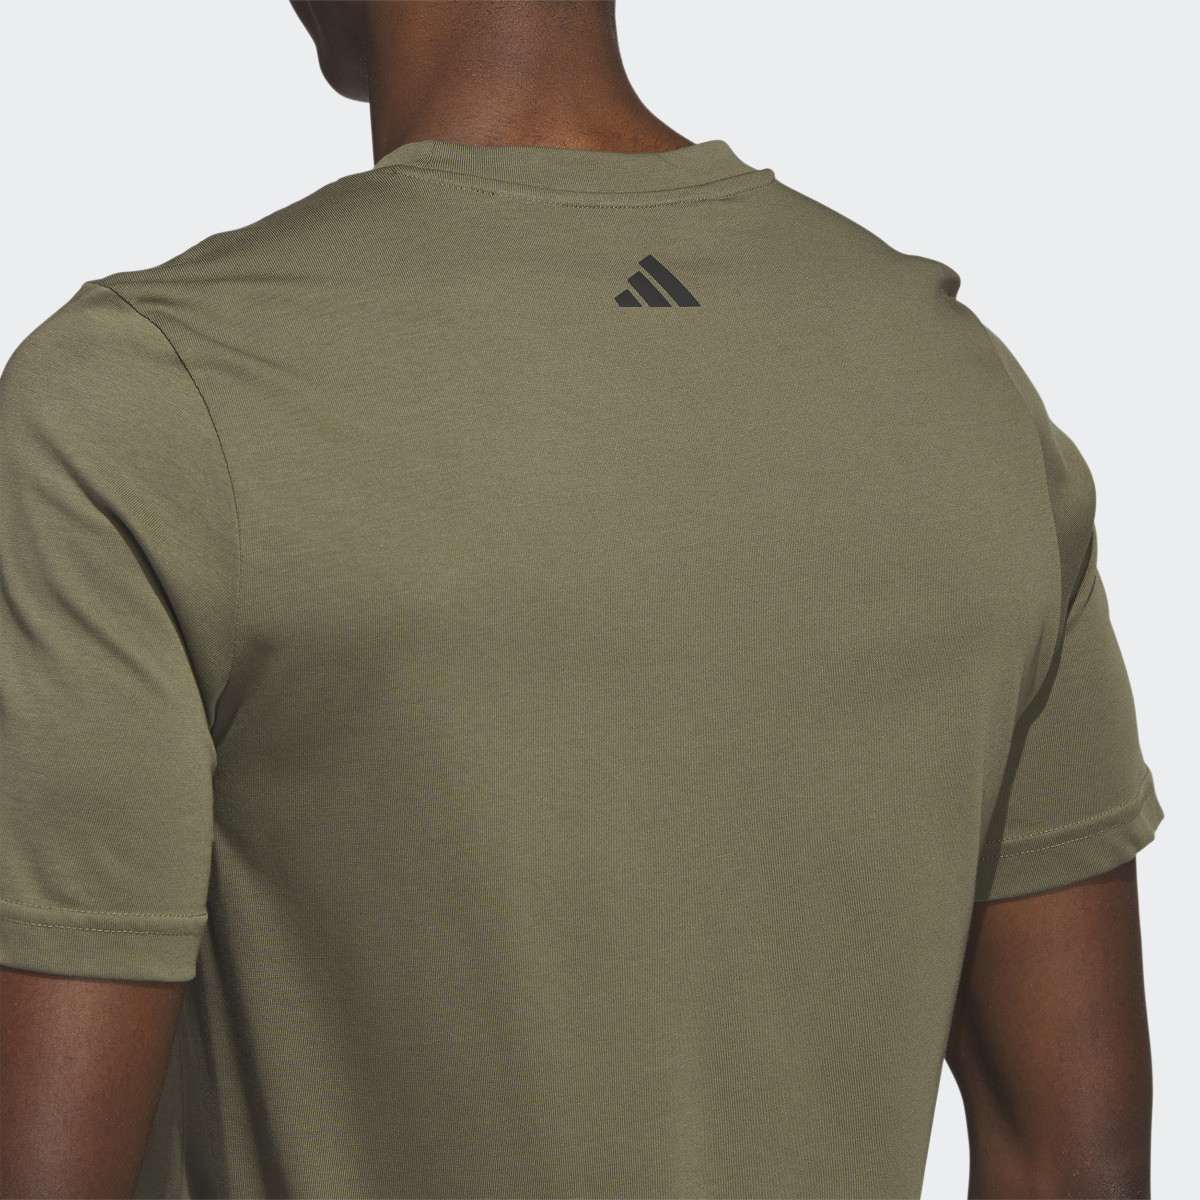 Adidas Golf T-Shirt. 7